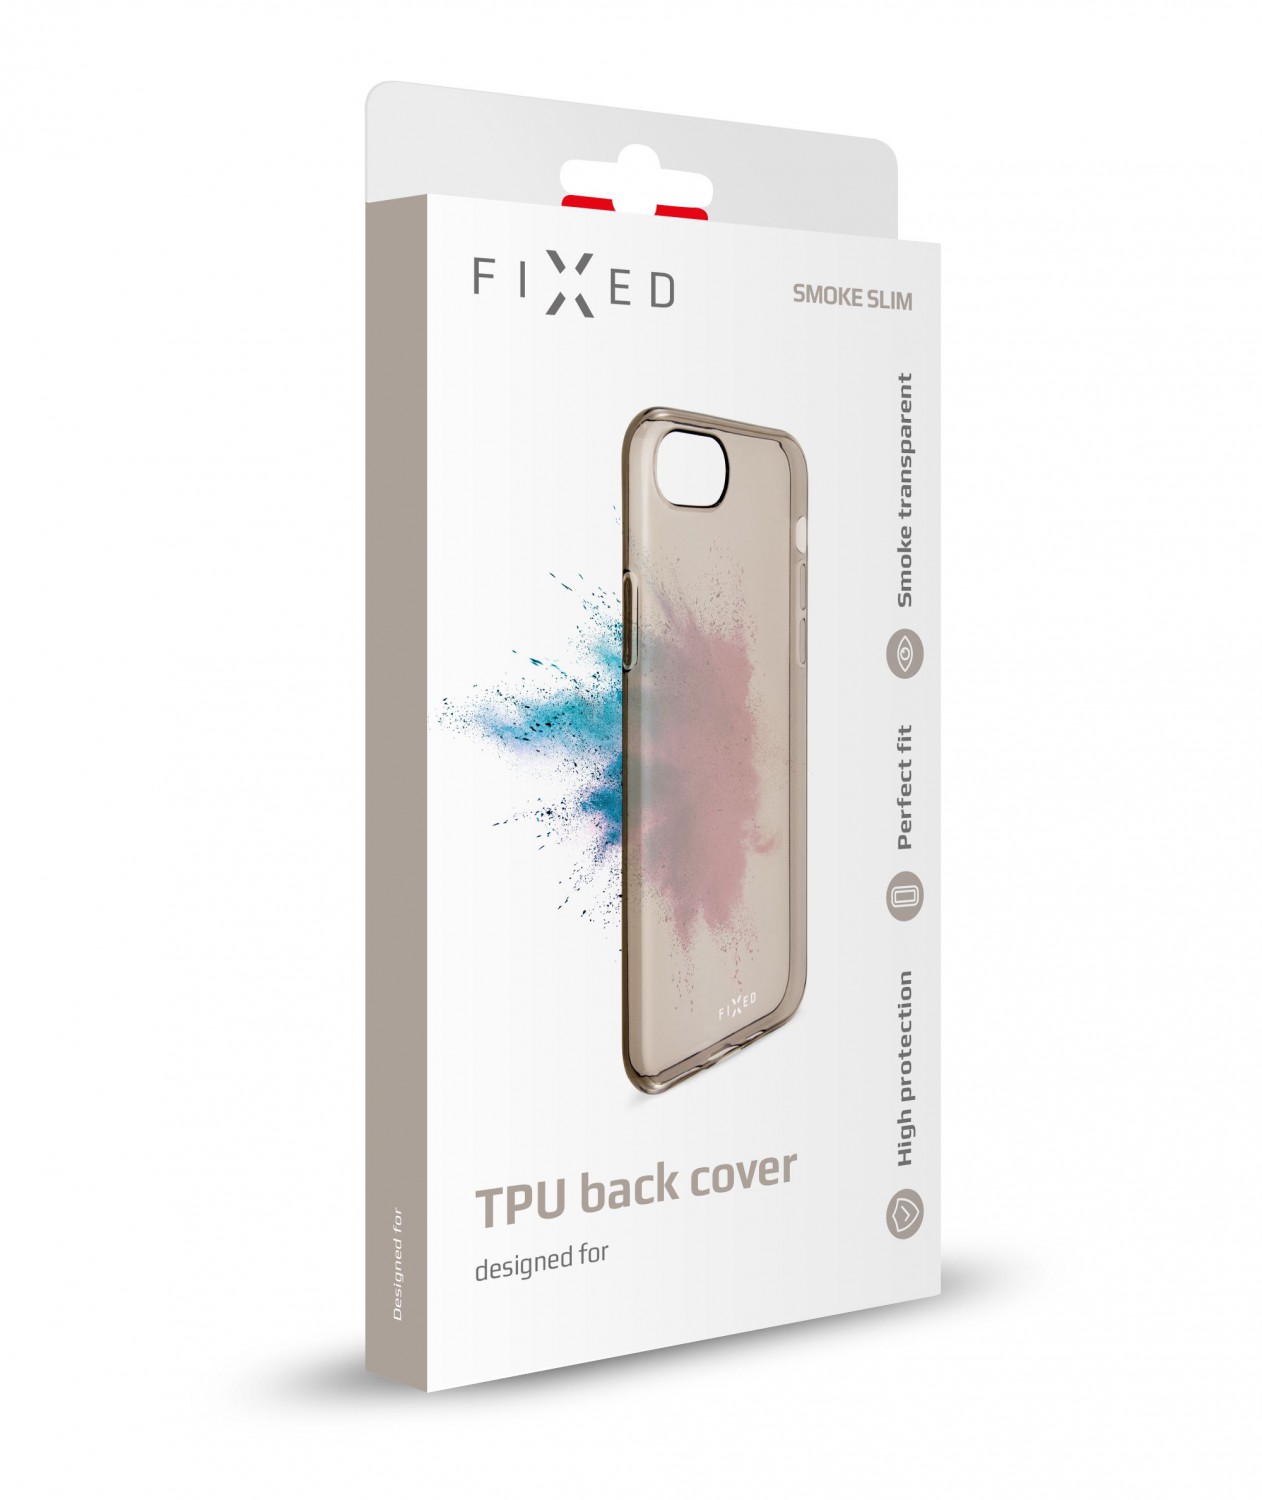 Silikonové pouzdro FIXED Slim pro Apple iPhone XR, kouřová